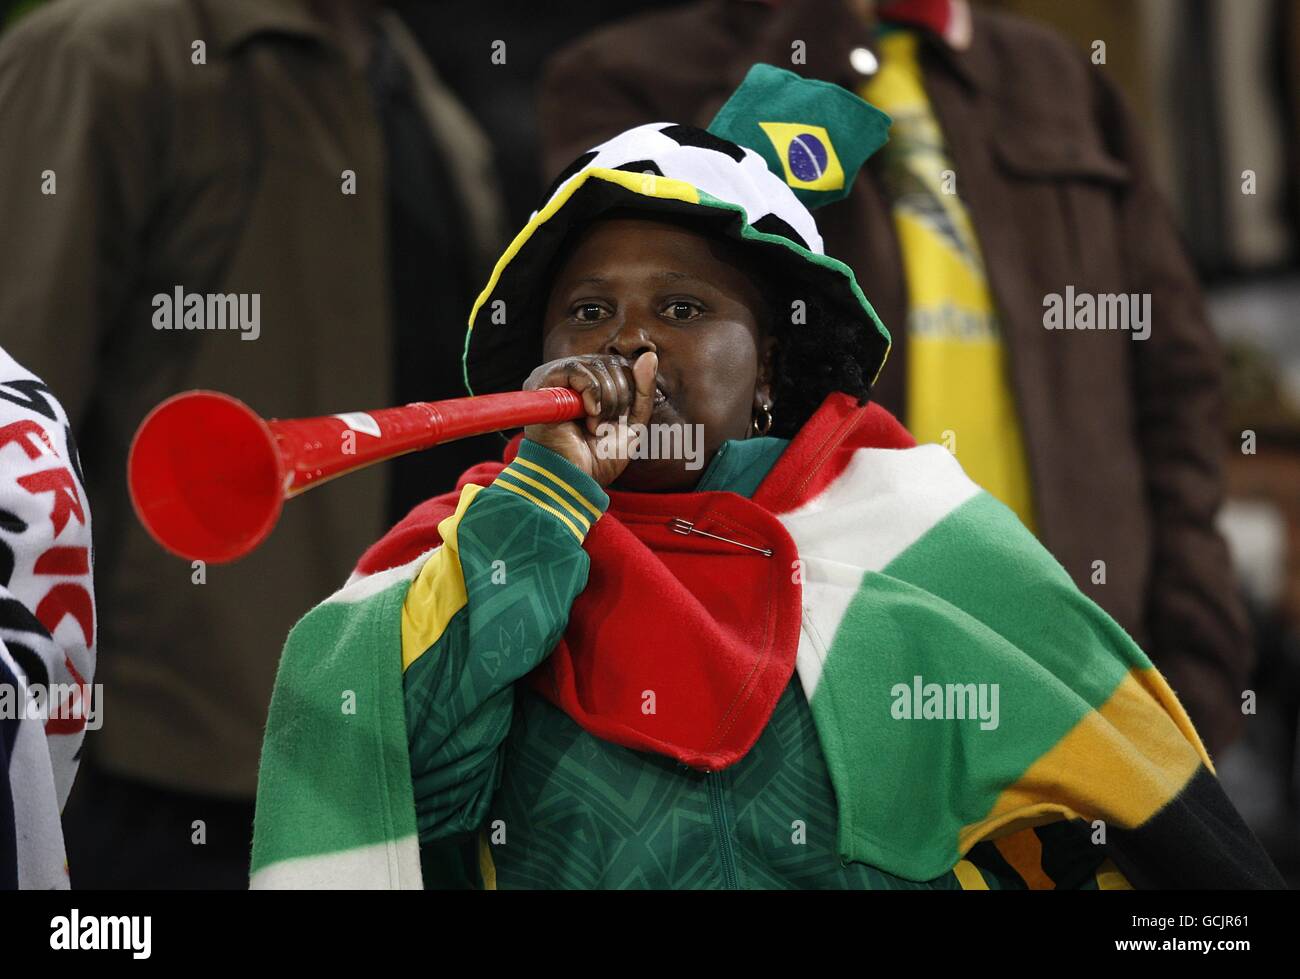 Fußball - FIFA Fußball-Weltmeisterschaft Südafrika 2010 - Gruppe H - Schweiz - Honduras - Free State Stadium. Ein Fußballfan bläst eine Vuvuzela in die Tribüne. Stockfoto